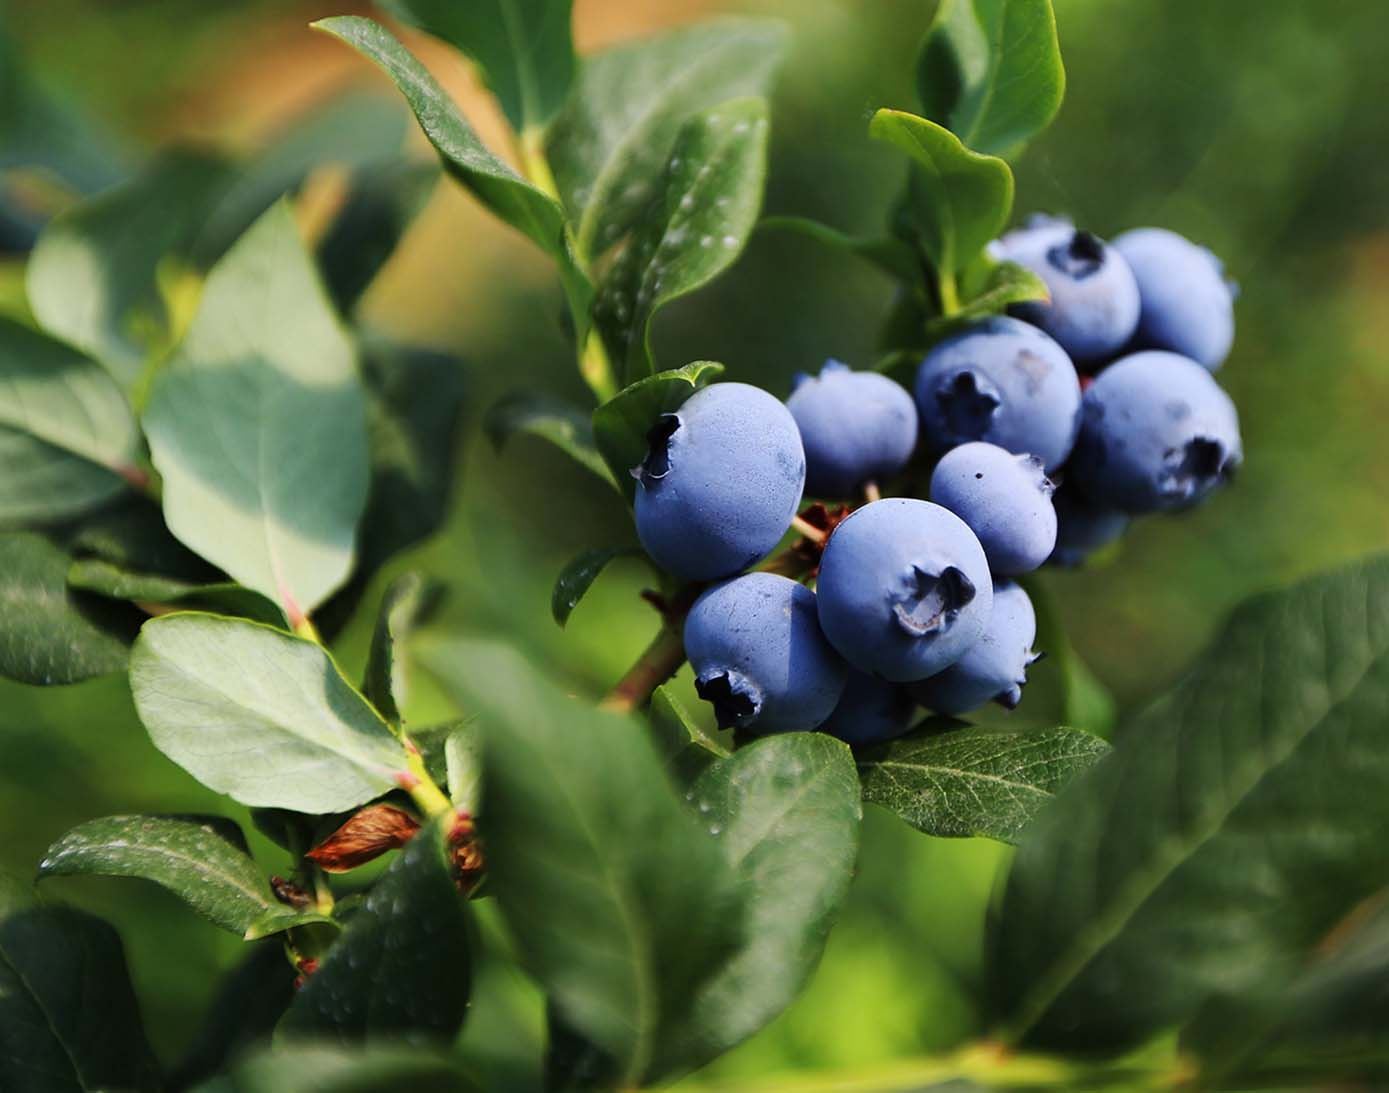 阳台养水果,颜值高口感甜,养一盆小蓝莓,产量丰富,营养价值高